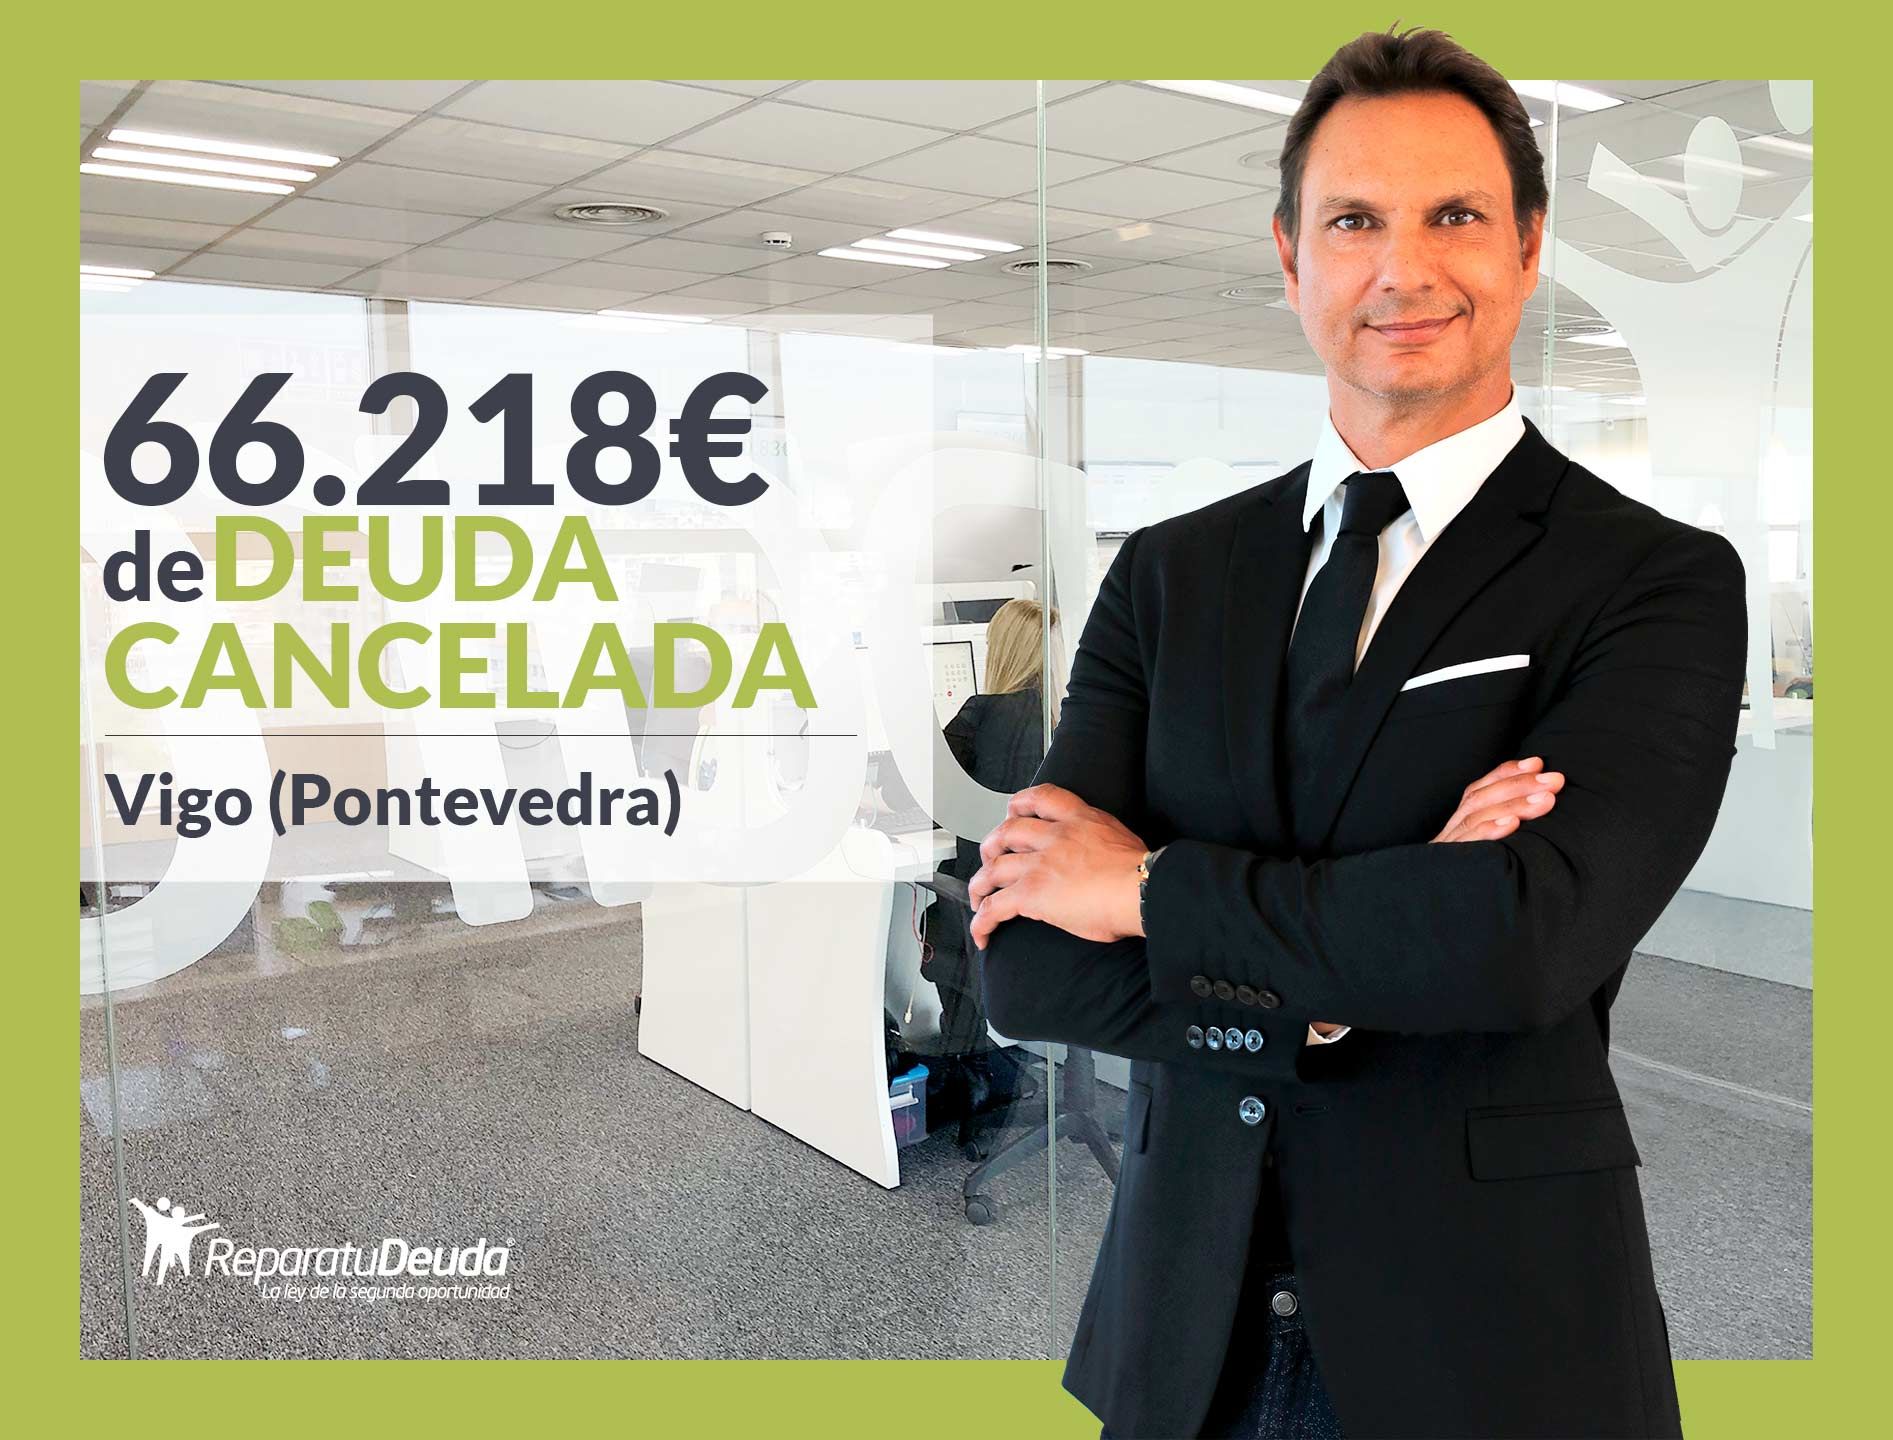 Repara tu Deuda Abogados cancela 66.218? en Vigo (Pontevedra) con la Ley de Segunda Oportunidad